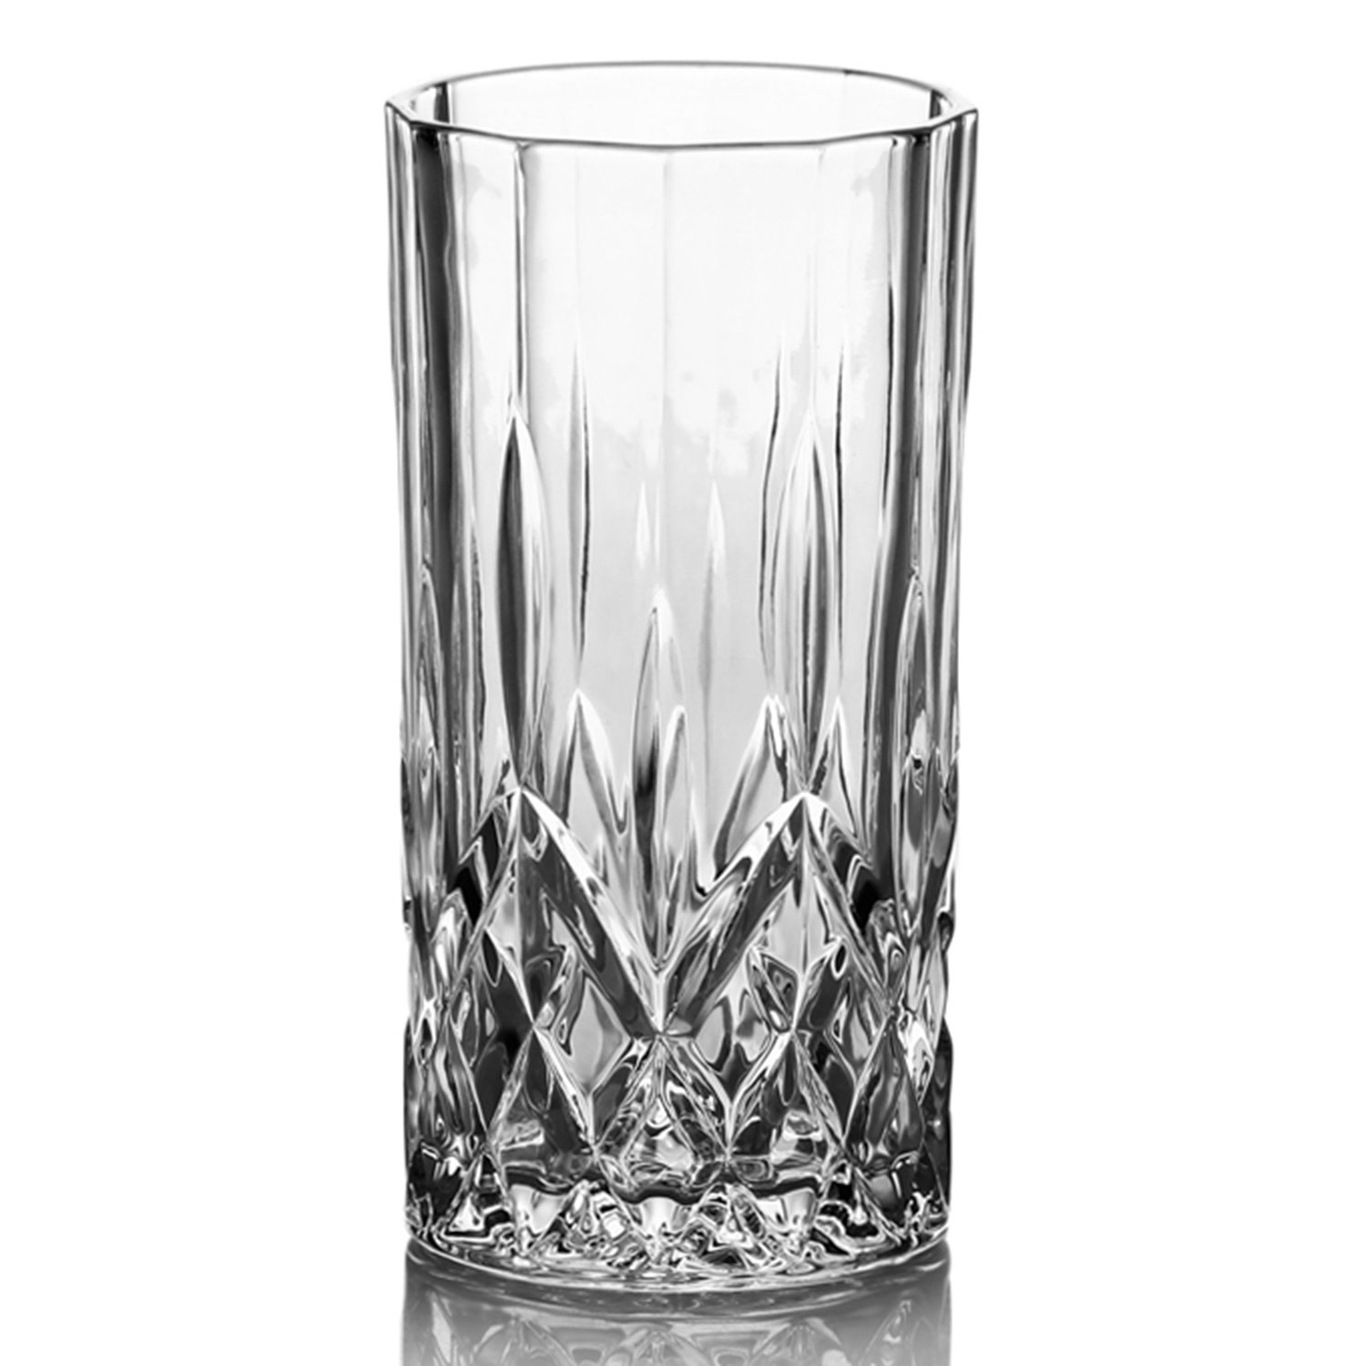 Harvey Longdrinkglass 36 cl 2-pk, Klar